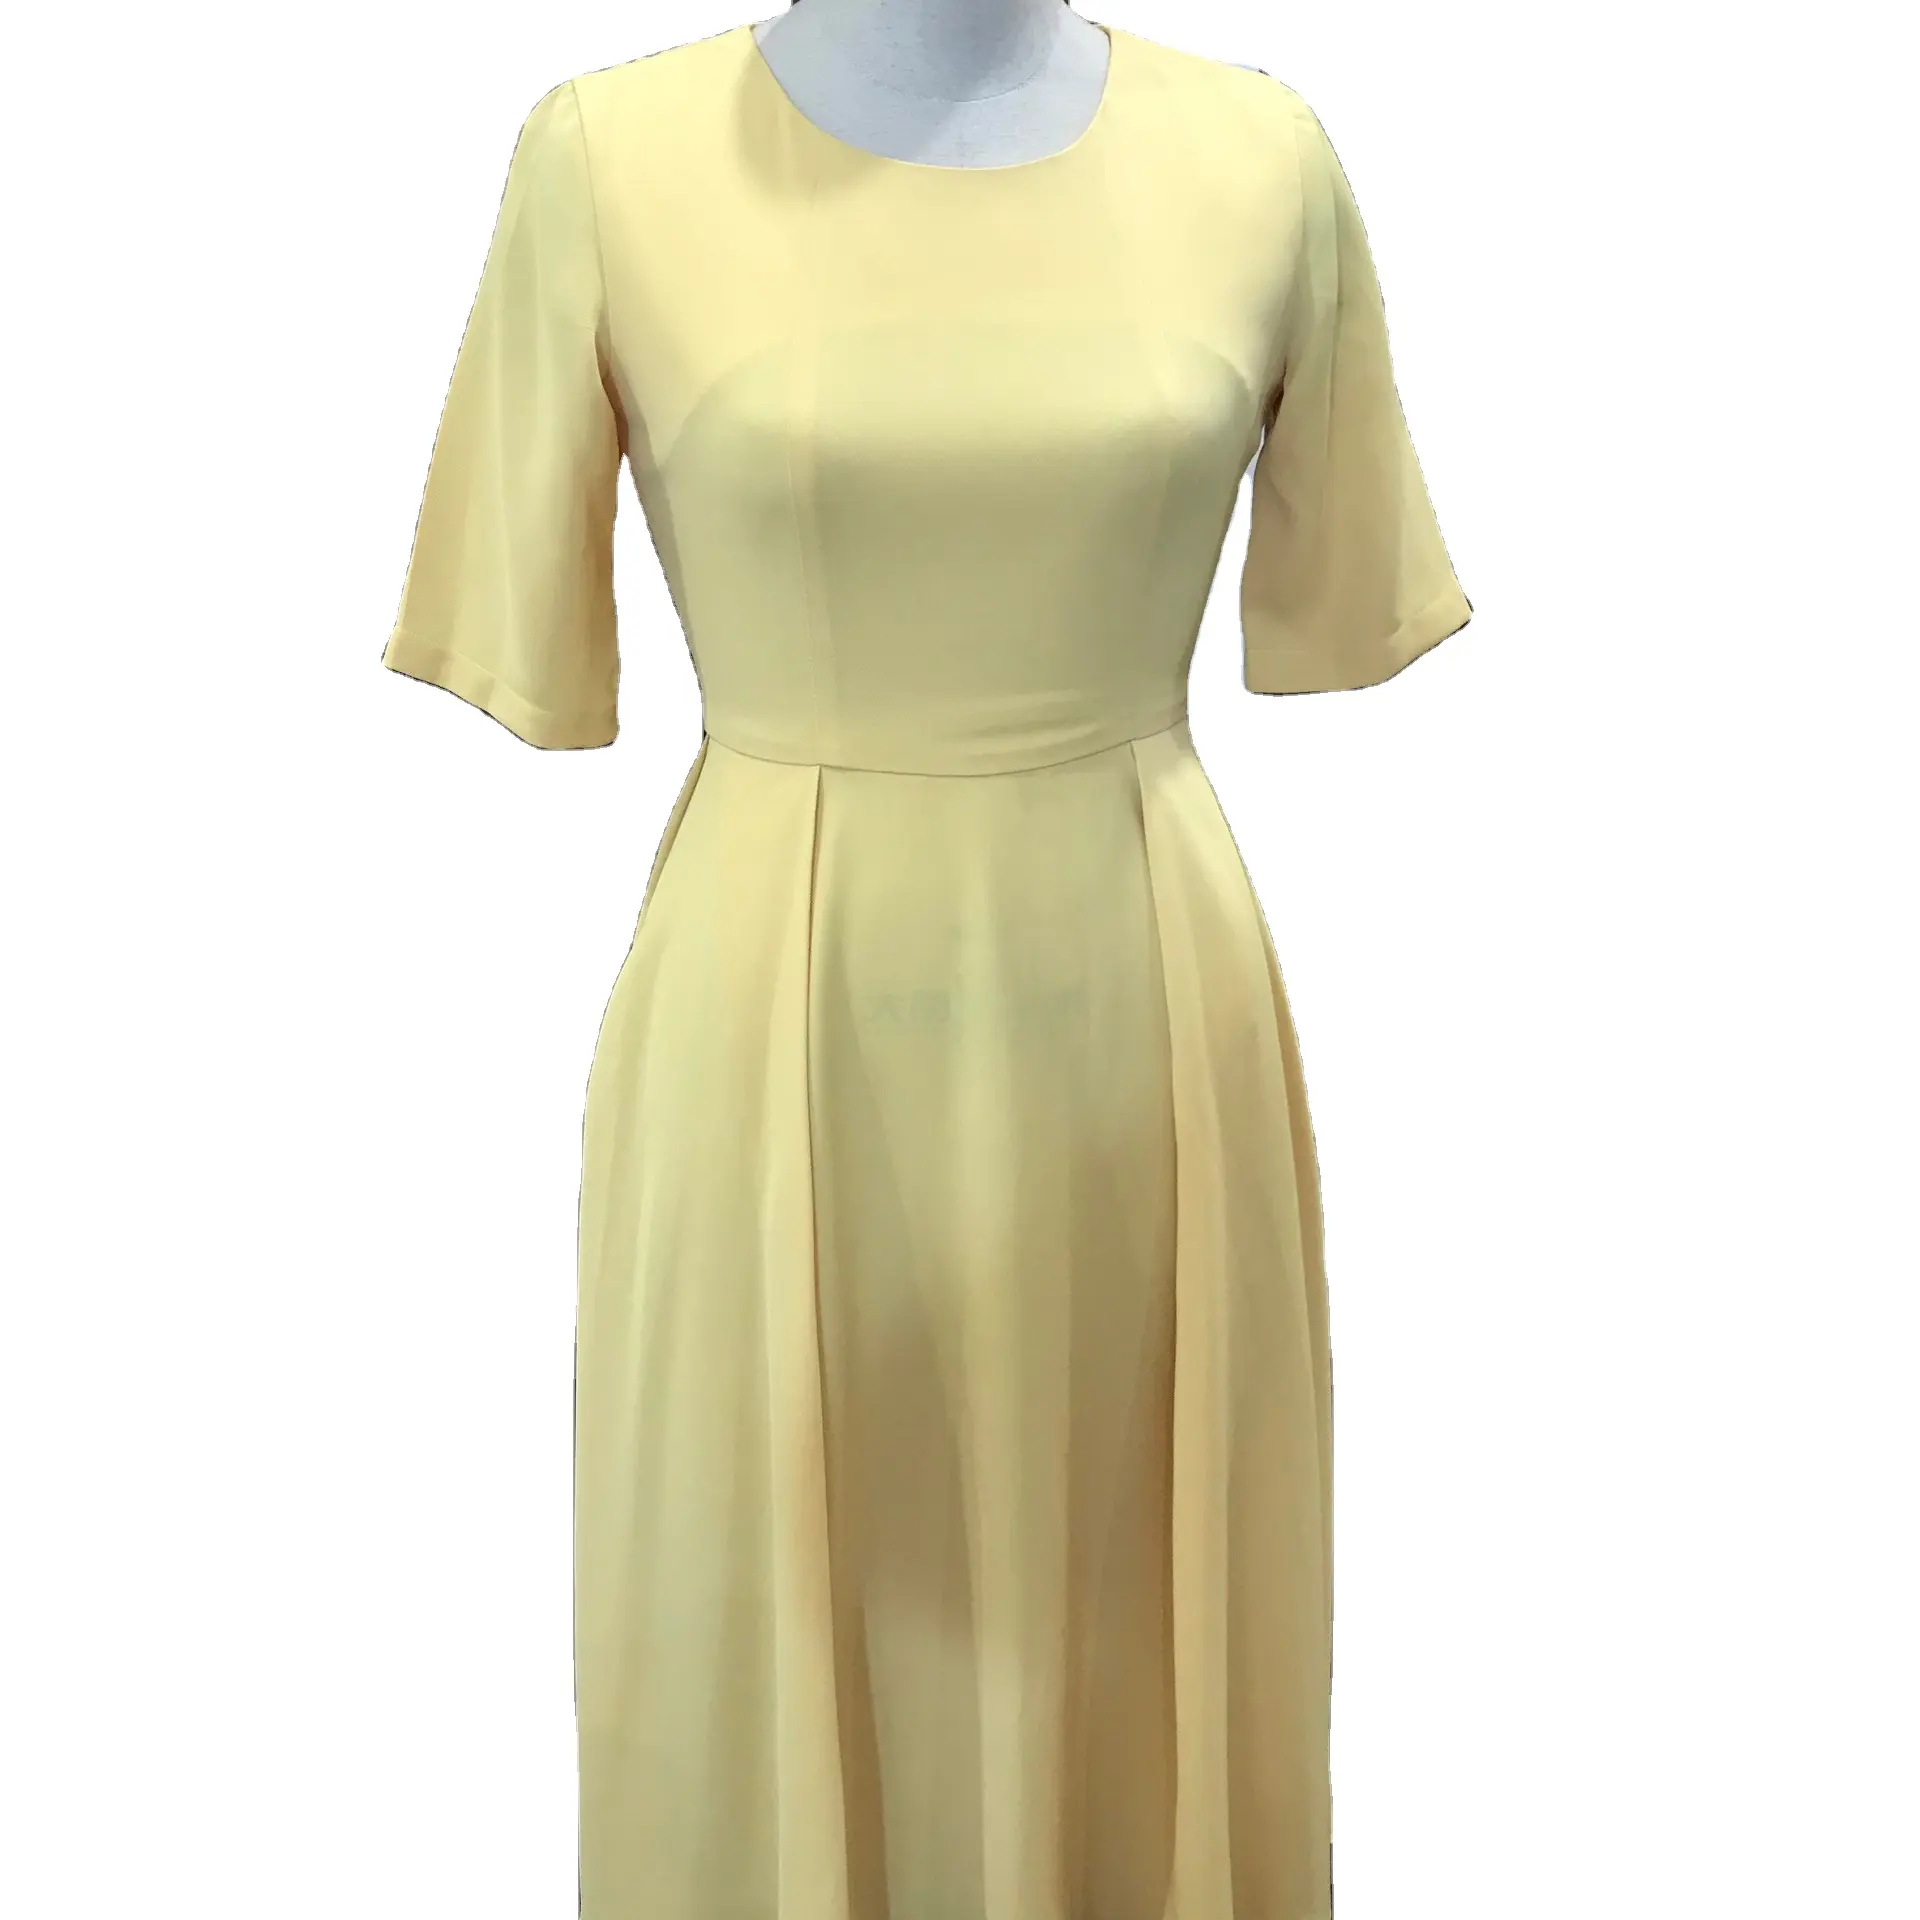 Оптовая цена, длинная рубашка из материала премиум-класса, женские офисные платья желтого цвета с круглым вырезом и талией для женщин